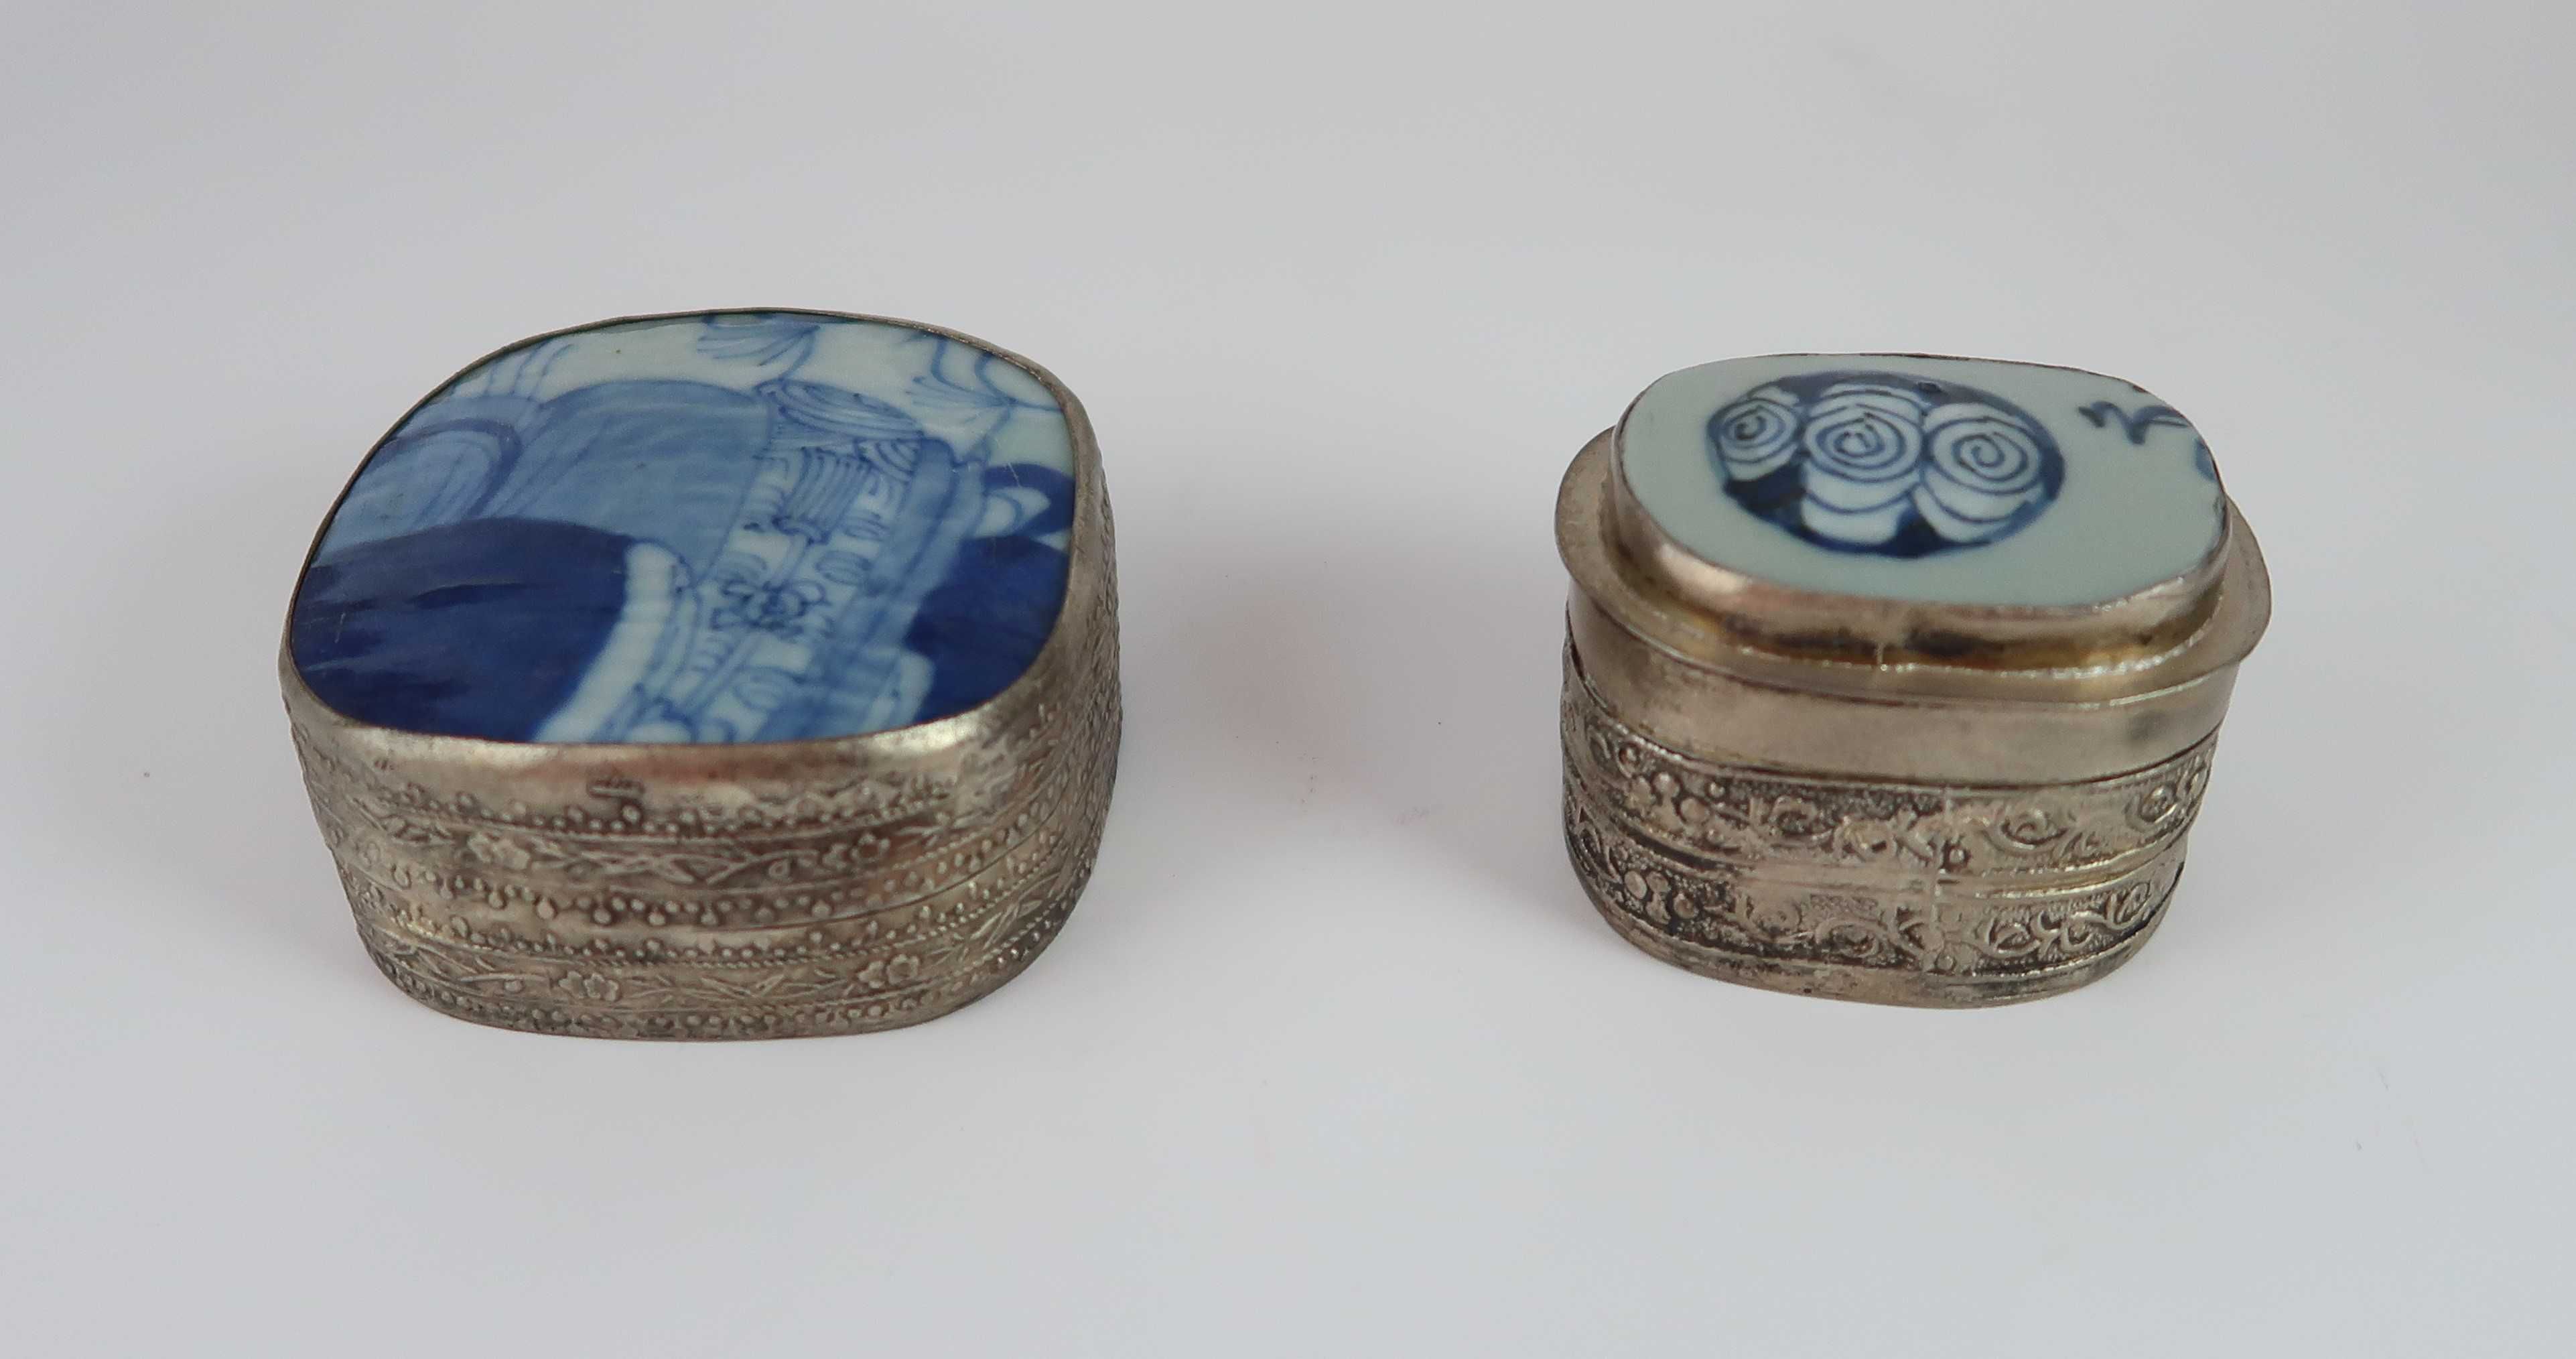 2 Caixas da china tampa porcelana azul e branca (antigas)